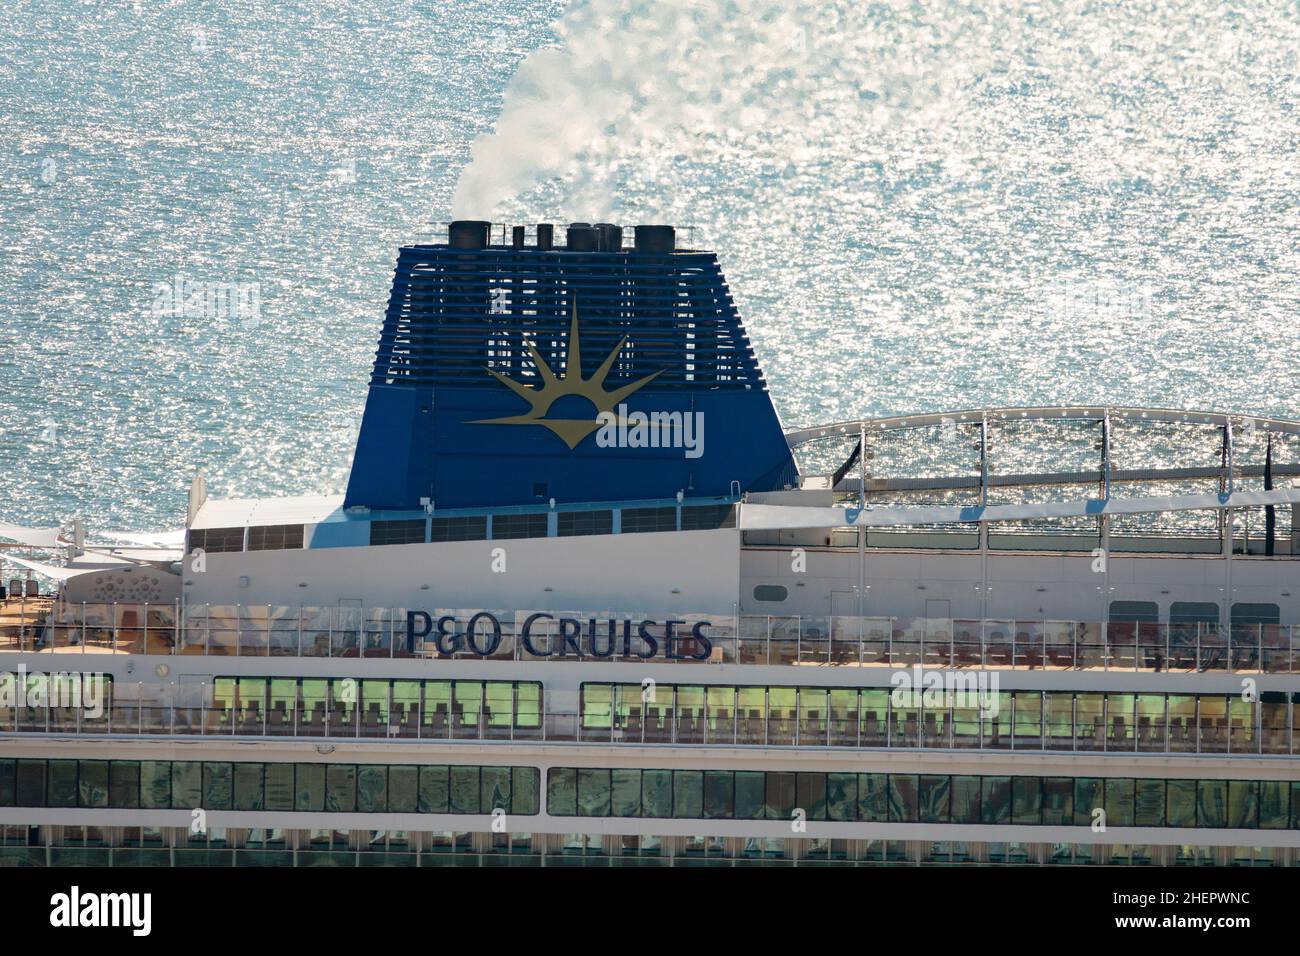 Il P&o Cruise Liner, Iona, retroilluminato con mare scintillante. Foto Stock